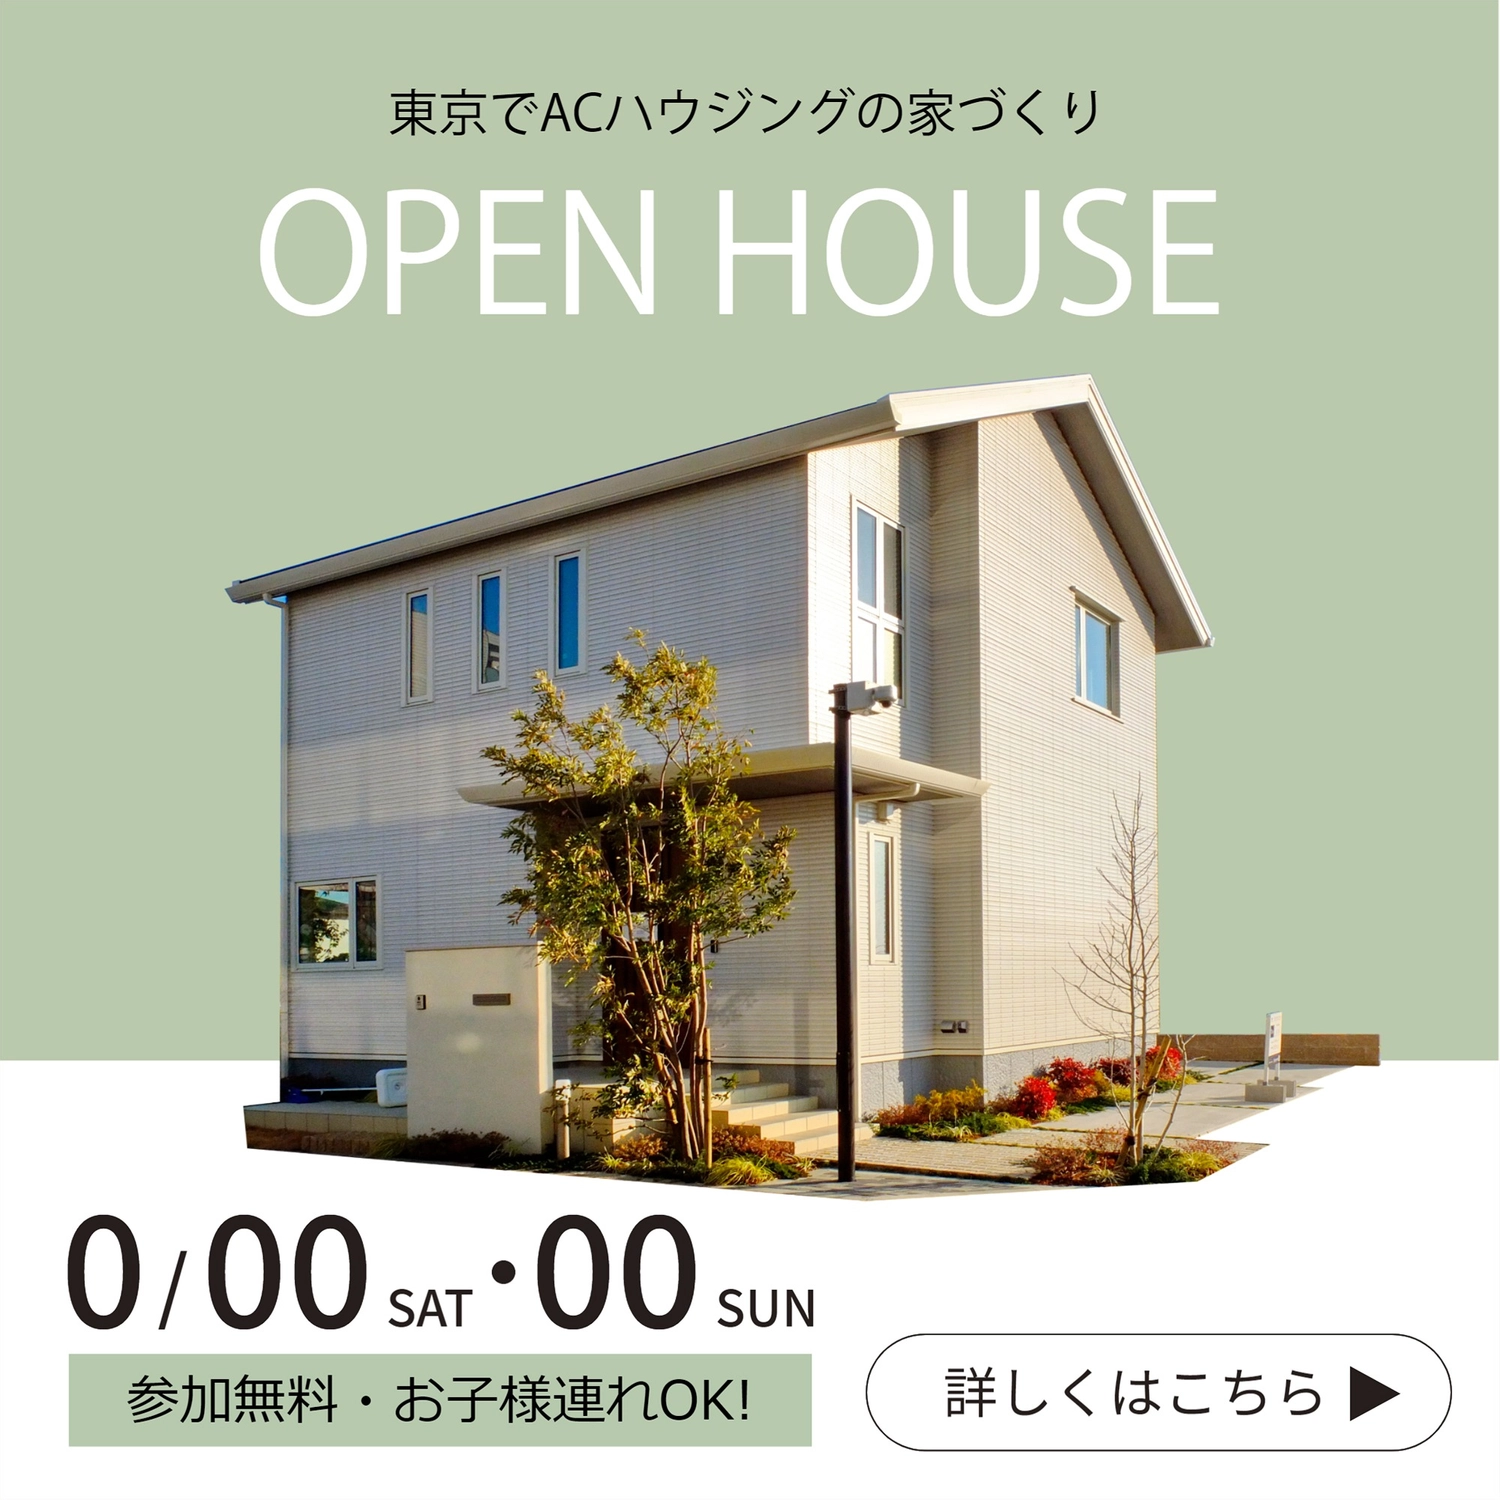 オープンハウス広告, 傳單, 綠色, 彩色背景, IG廣告 模板